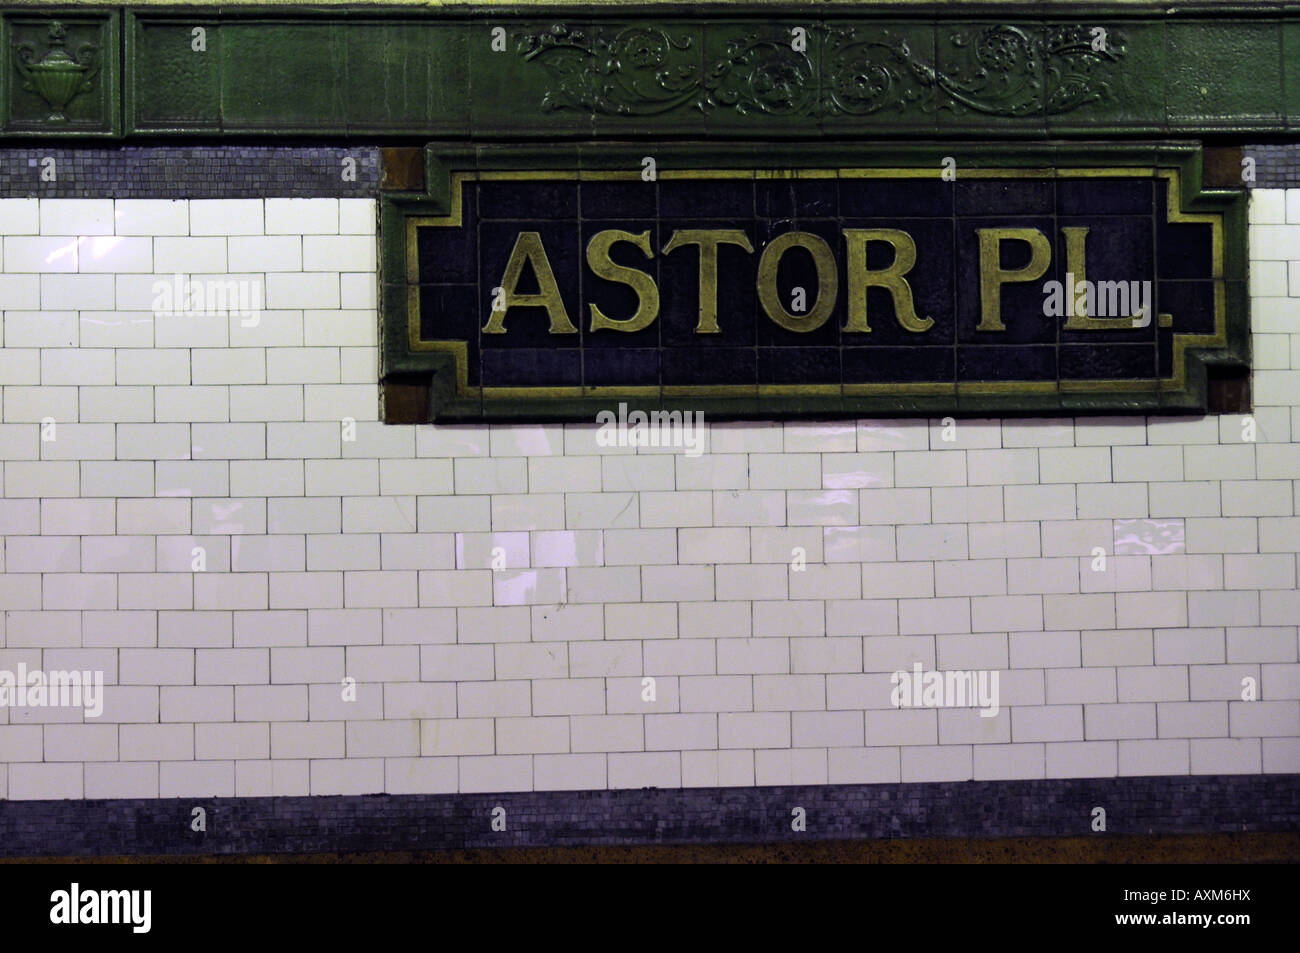 Piastrelle a muro e il mosaico nameplace Astor Place Stazione della metropolitana numero 6 la linea New York City Transit Authority Stazione della Metropolitana Foto Stock